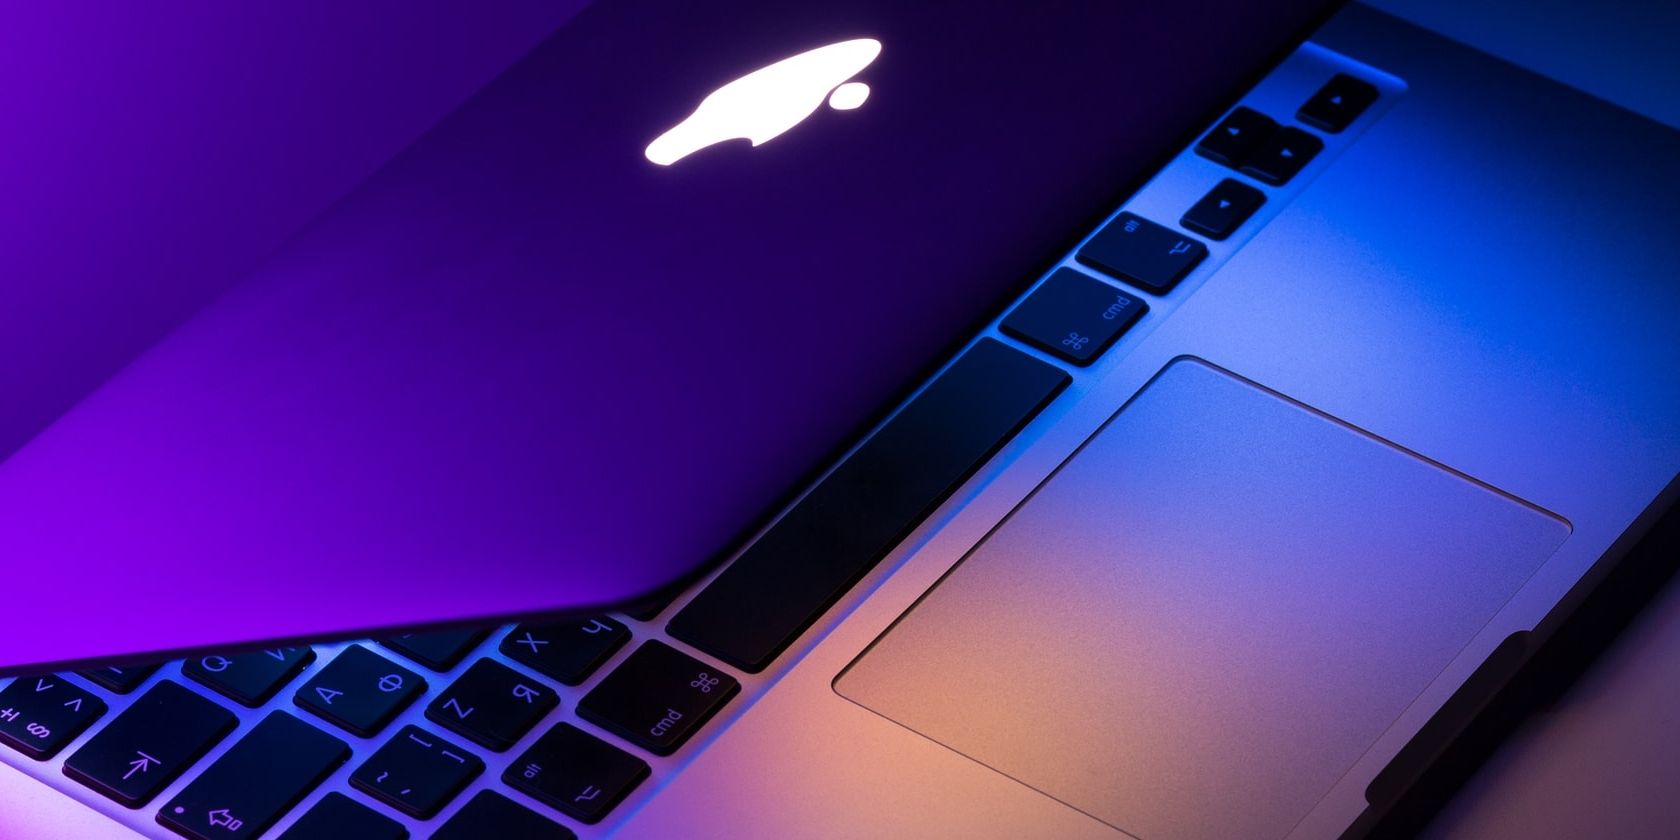 Half open MacBook Pro with purple-blue lighting.